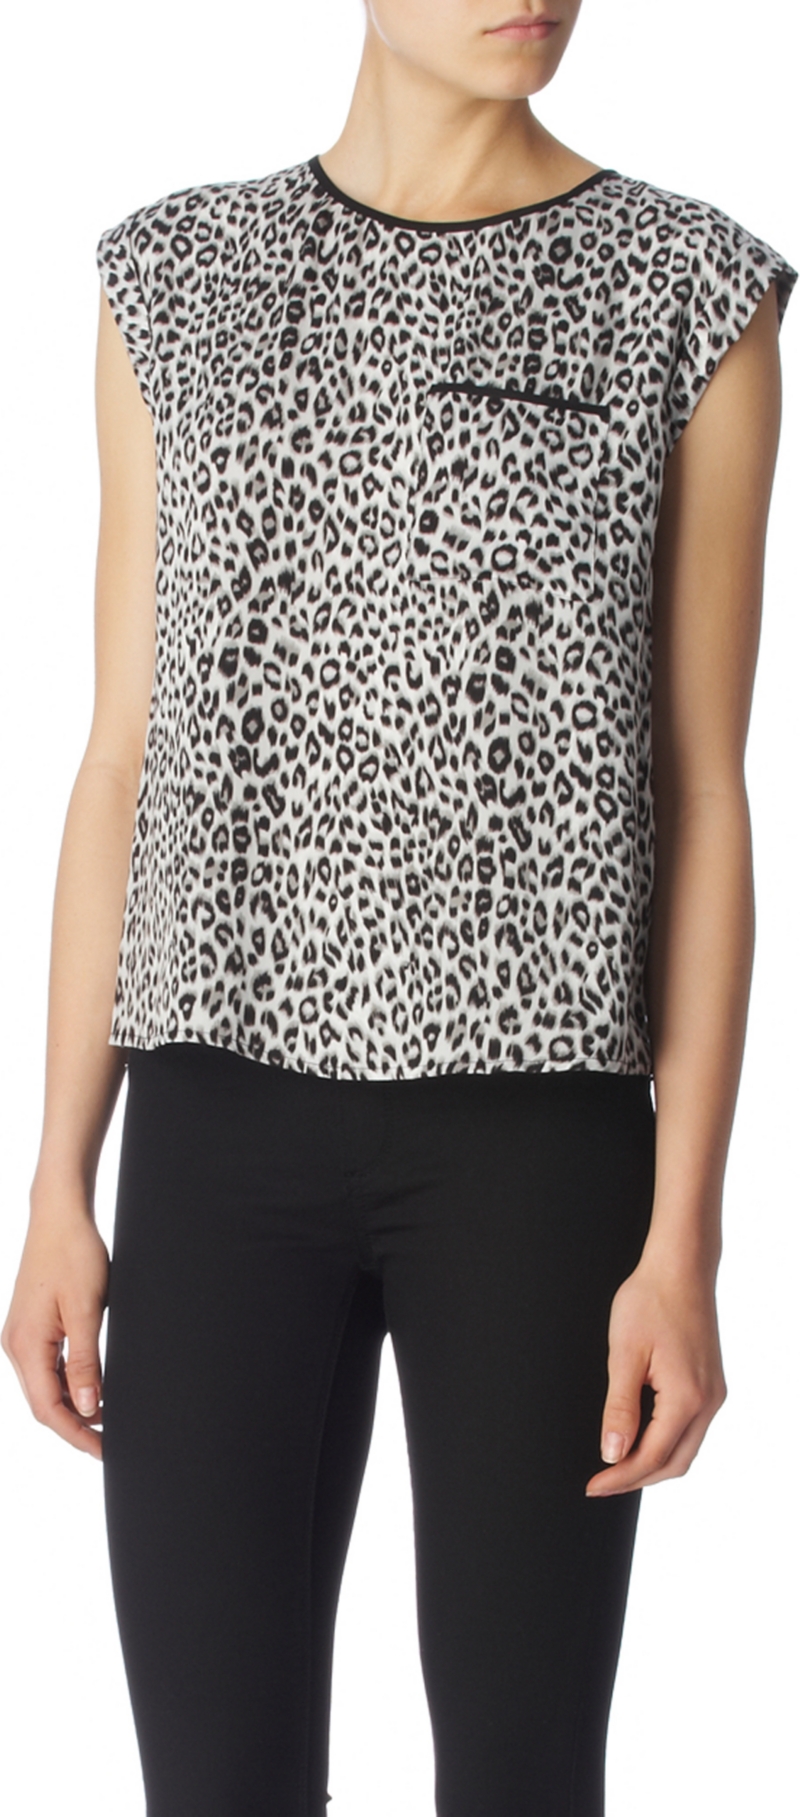 Leopard top   OASIS   T shirts & jerseys   Tops   Womenswear 